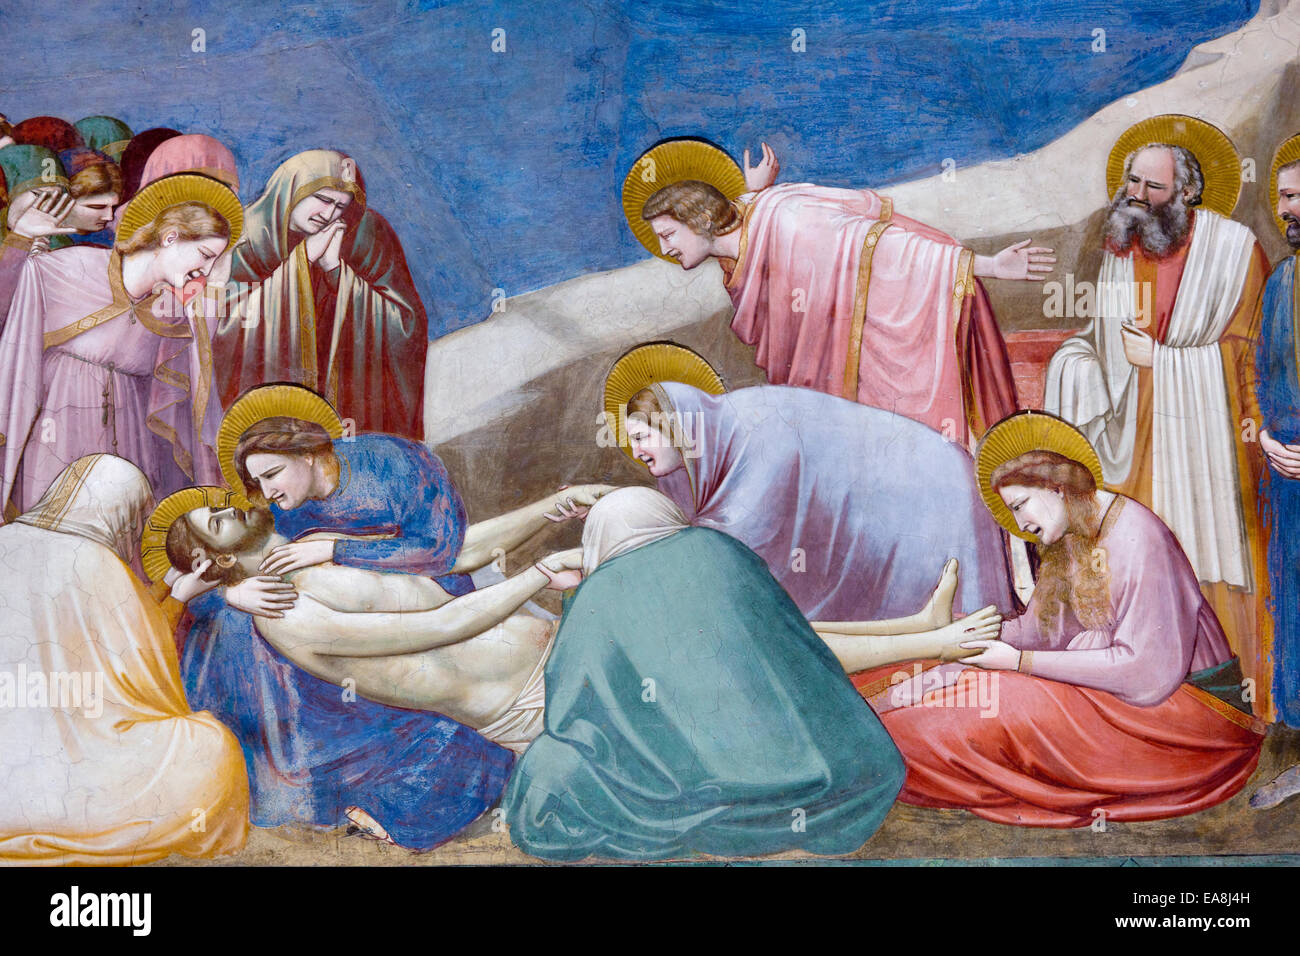 Lamentation of Christ by Giotto di Bondone, The Scrovegni Chapel - Cappella degli Scrovegni, Padua, Veneto, Italy Stock Photo